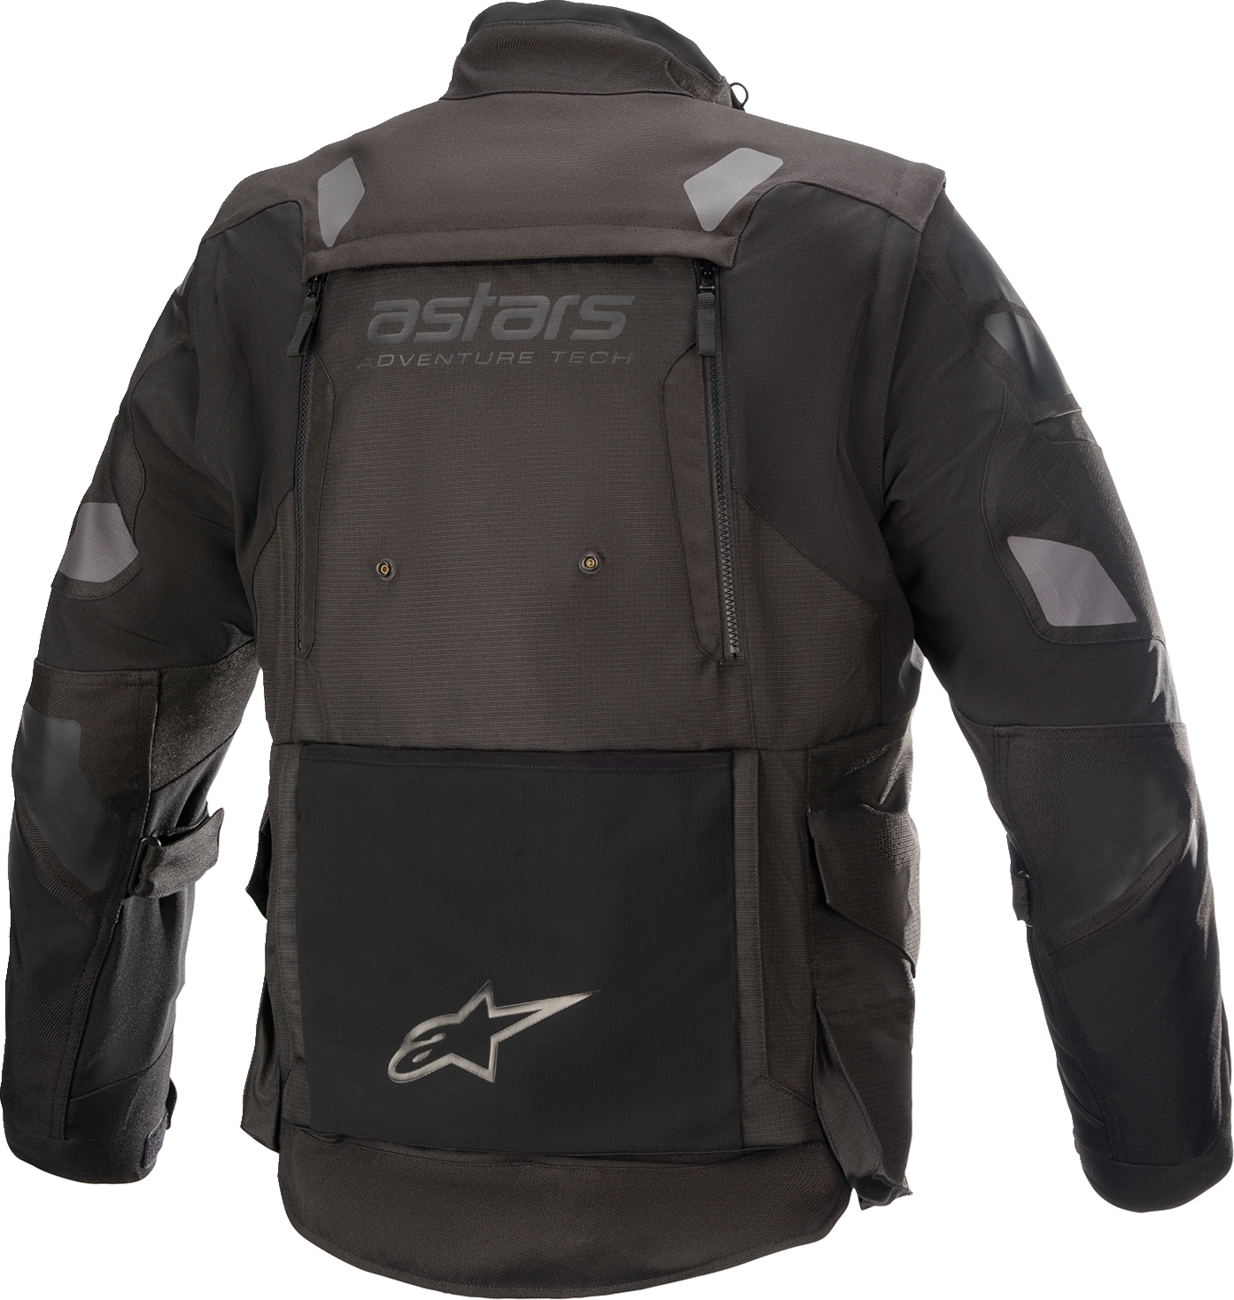 ALPINESTARS Halo Drystar® Jacket - Black - Medium 3204822-1100-M